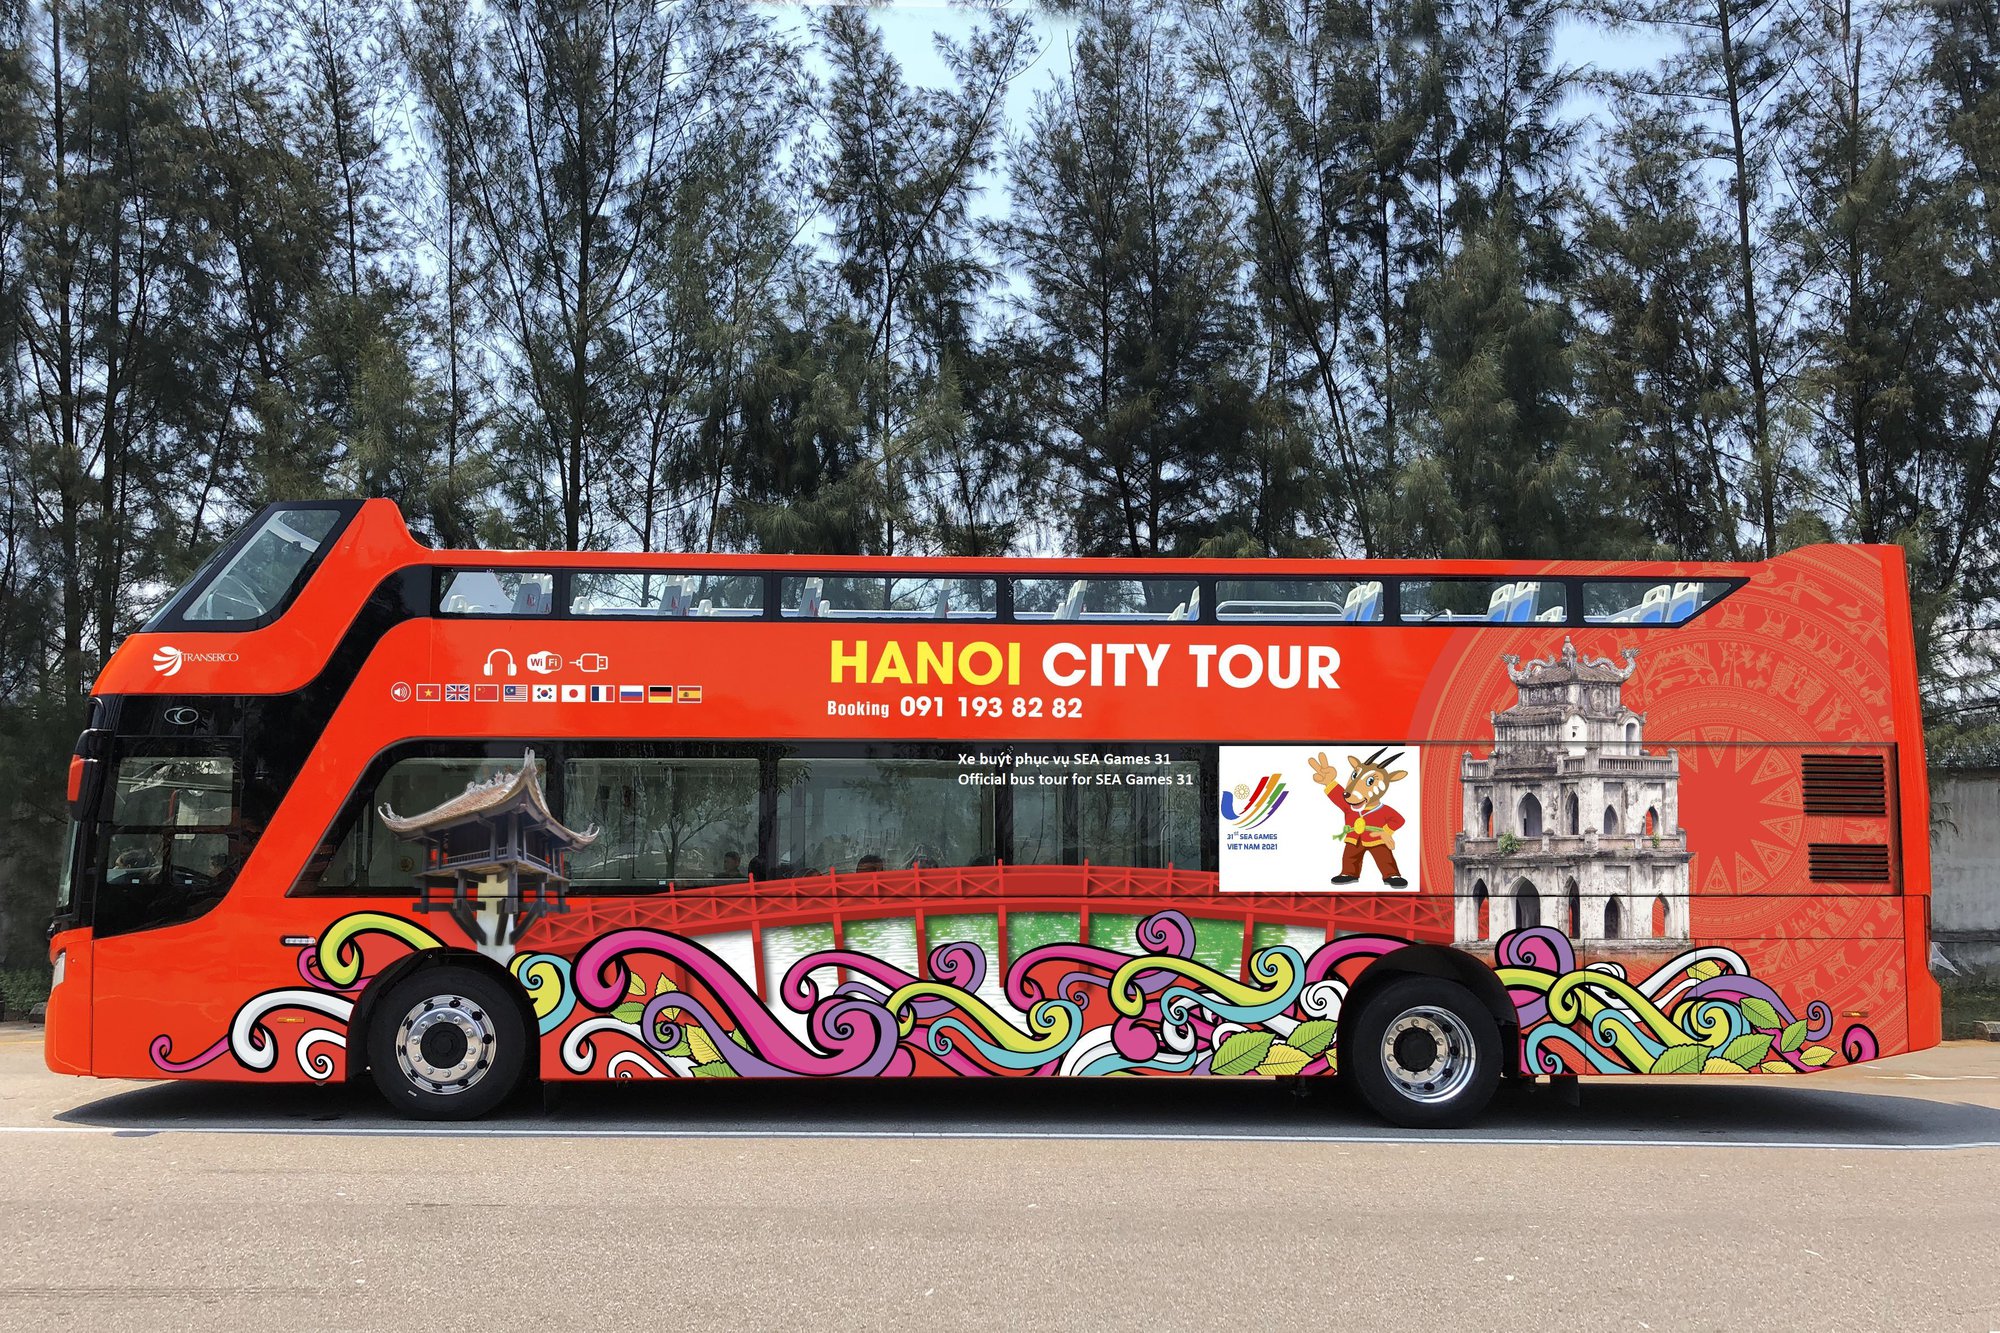 Khám phá thành phố Hà Nội với vé xe buýt 2 tầng MIỄN PHÍ! Điểm qua những địa danh nổi tiếng, thưởng thức cảnh quan đẹp và không gian giải trí tuyệt vời. Đây là cơ hội tuyệt vời để trải nghiệm thành phố đầy màu sắc và văn hóa này một cách hoàn toàn mới lạ.